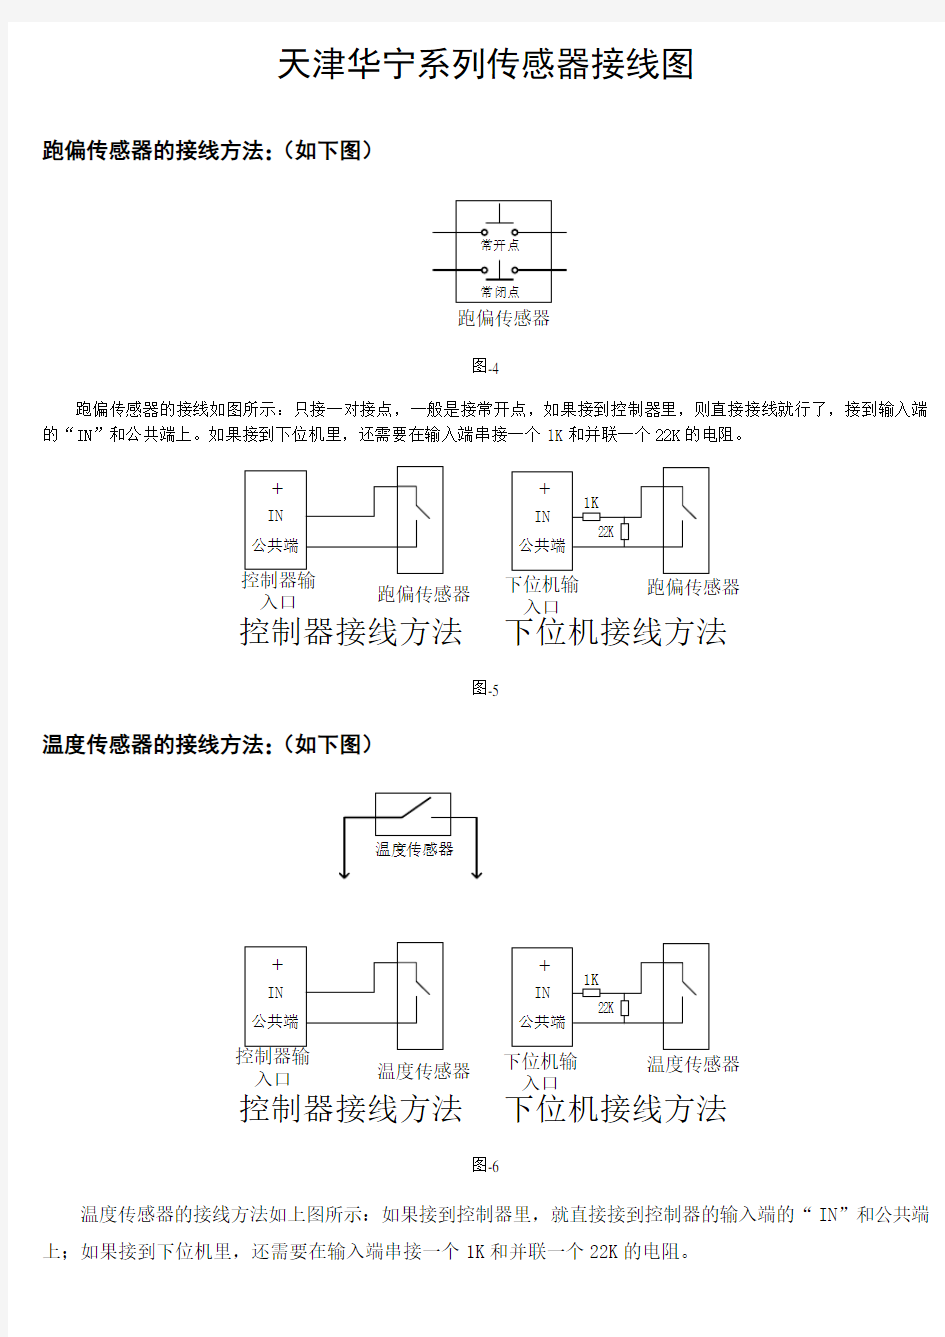 天津华宁系列传感器接线图